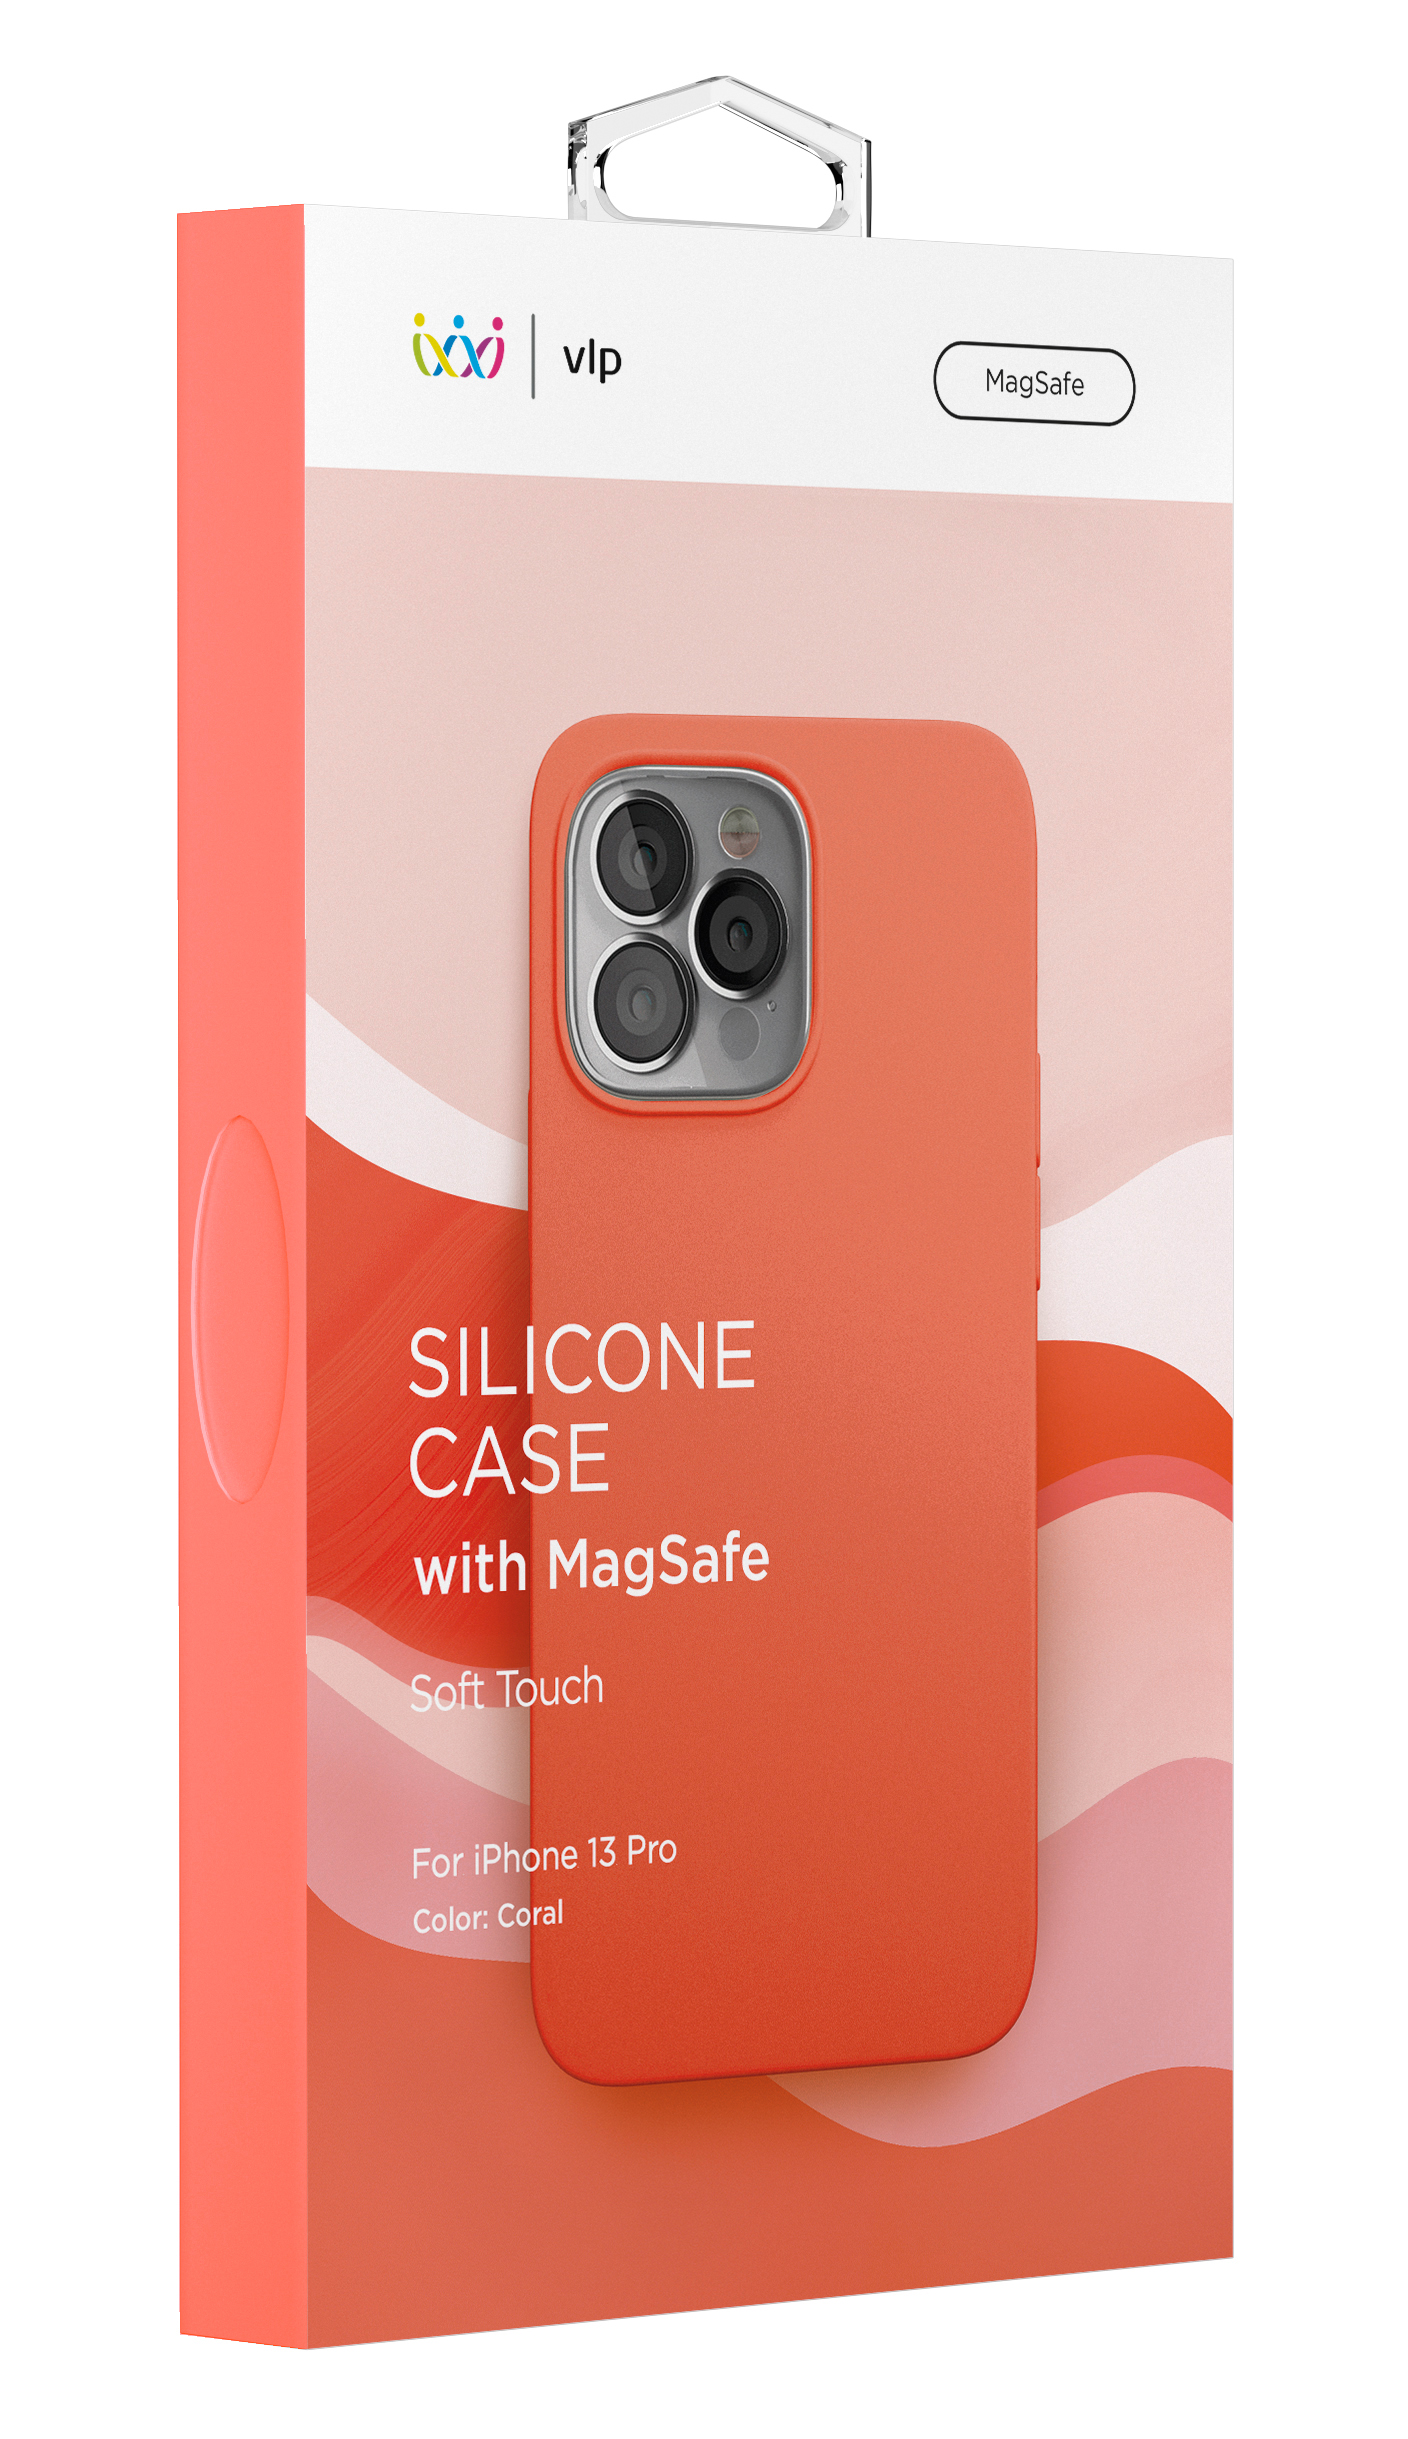 Чехол защитный vlp Silicone case with MagSafe для iPhone 13 Pro, коралловый